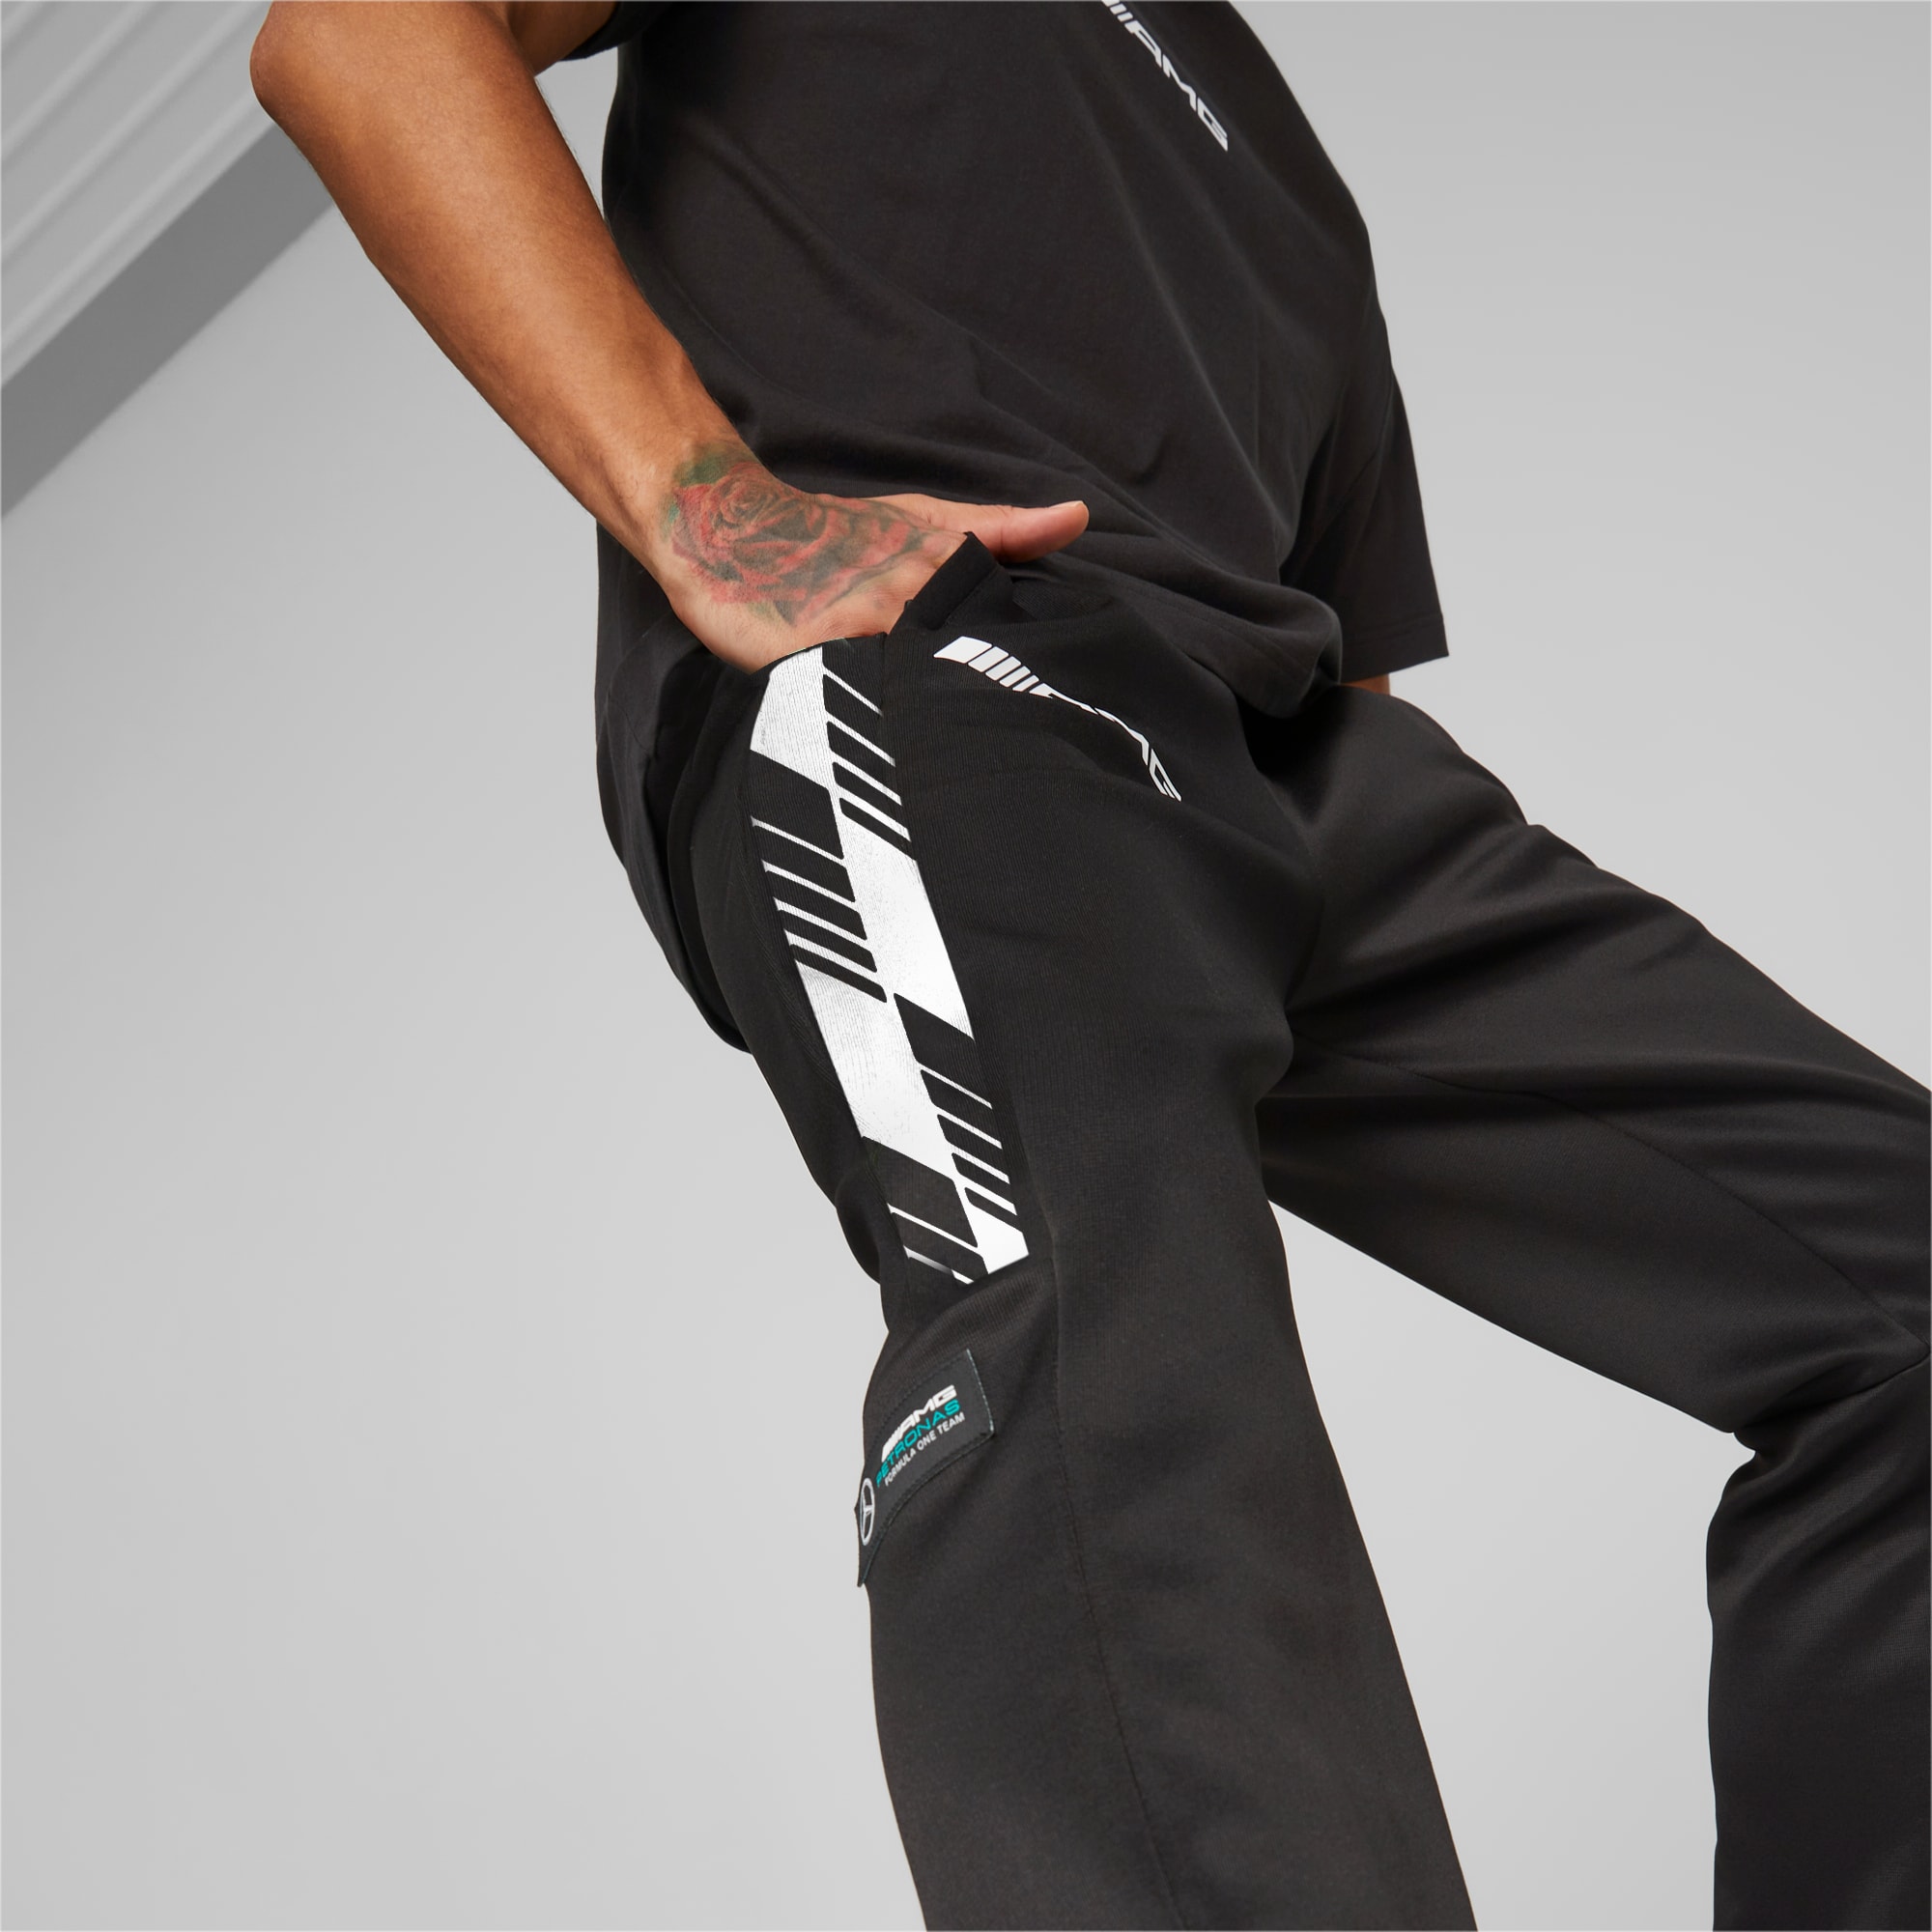 Pantaloni tuta slim fit uomo nera Mercedes AMG F1 casual lv pantaloni £179